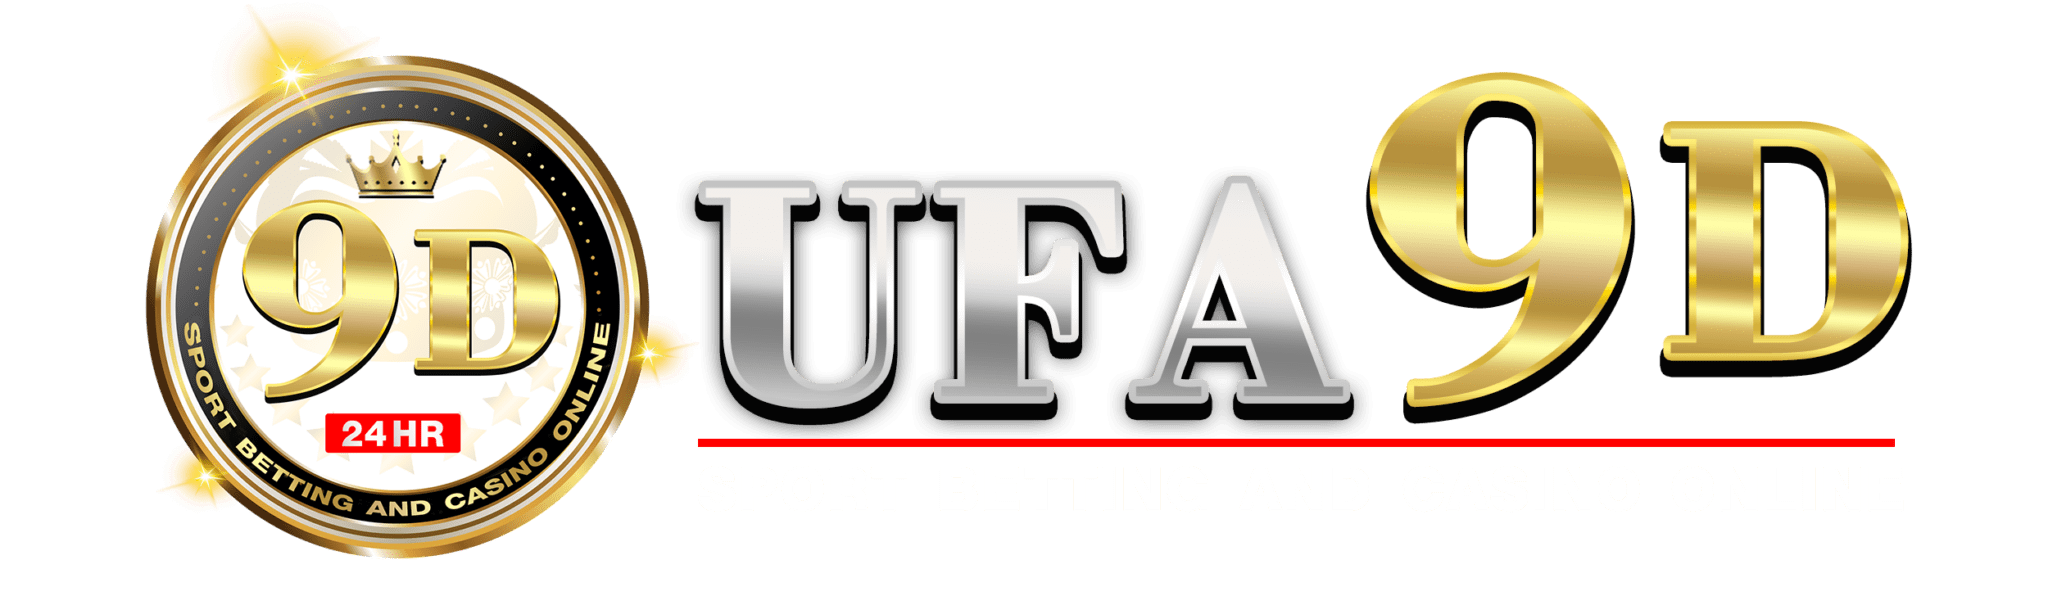 UFA9D logo